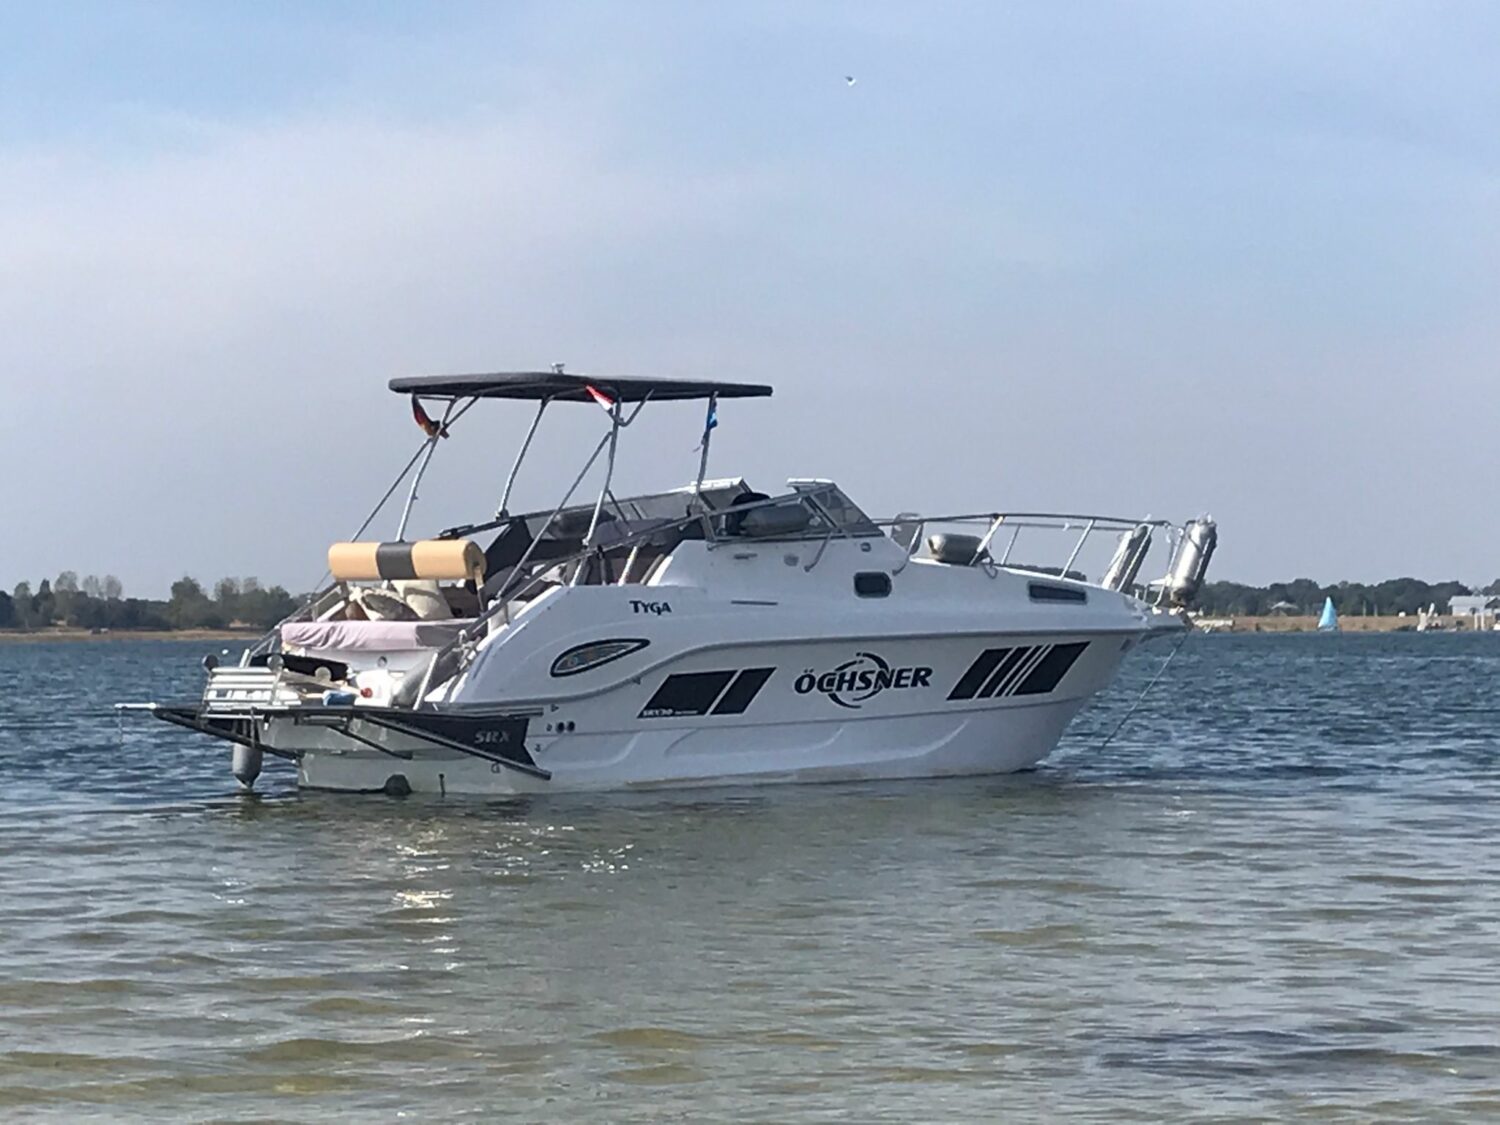 srx30 yachtline kaufen